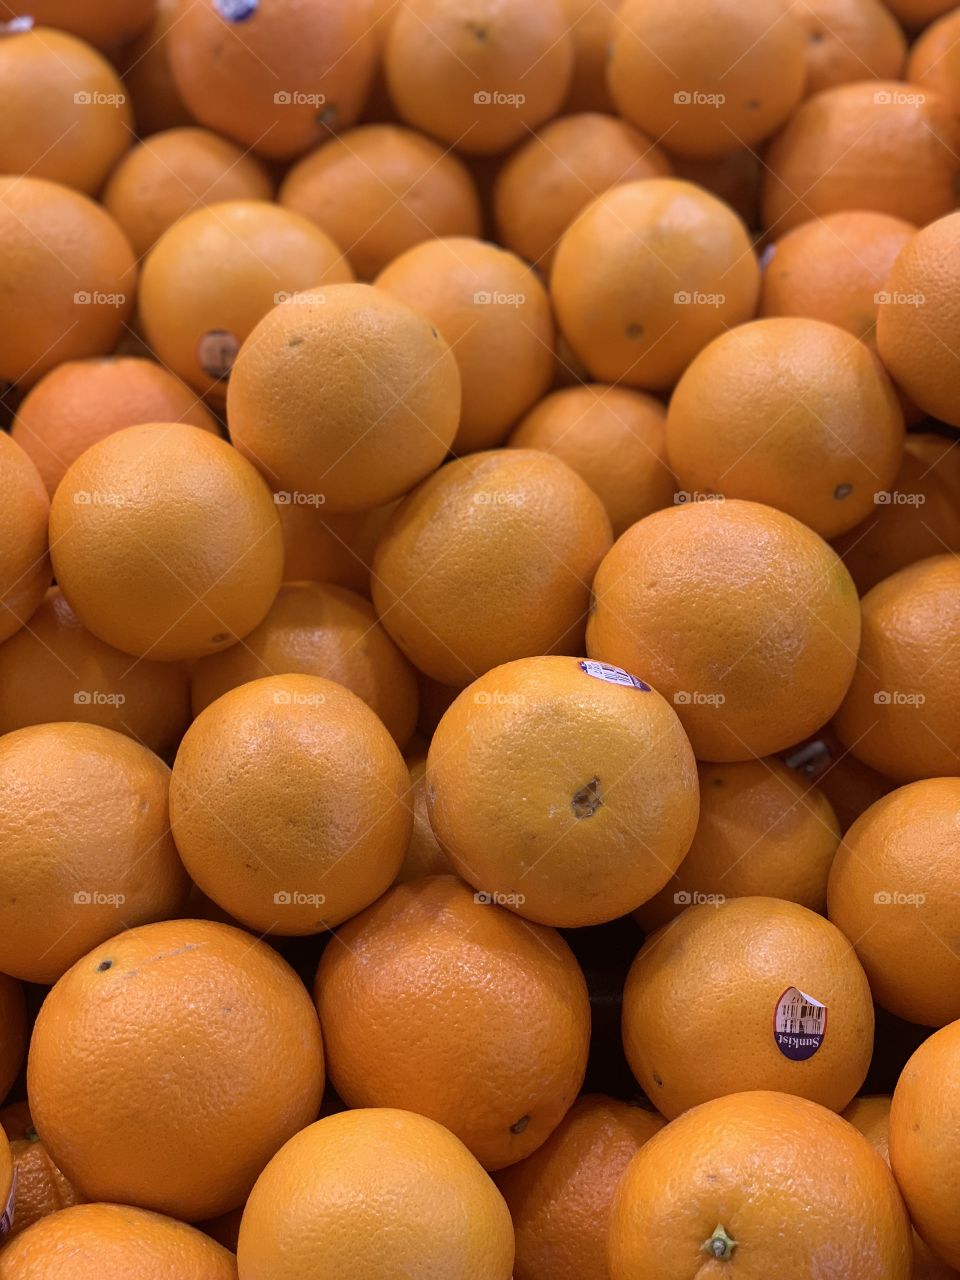  Bright orange oranges!